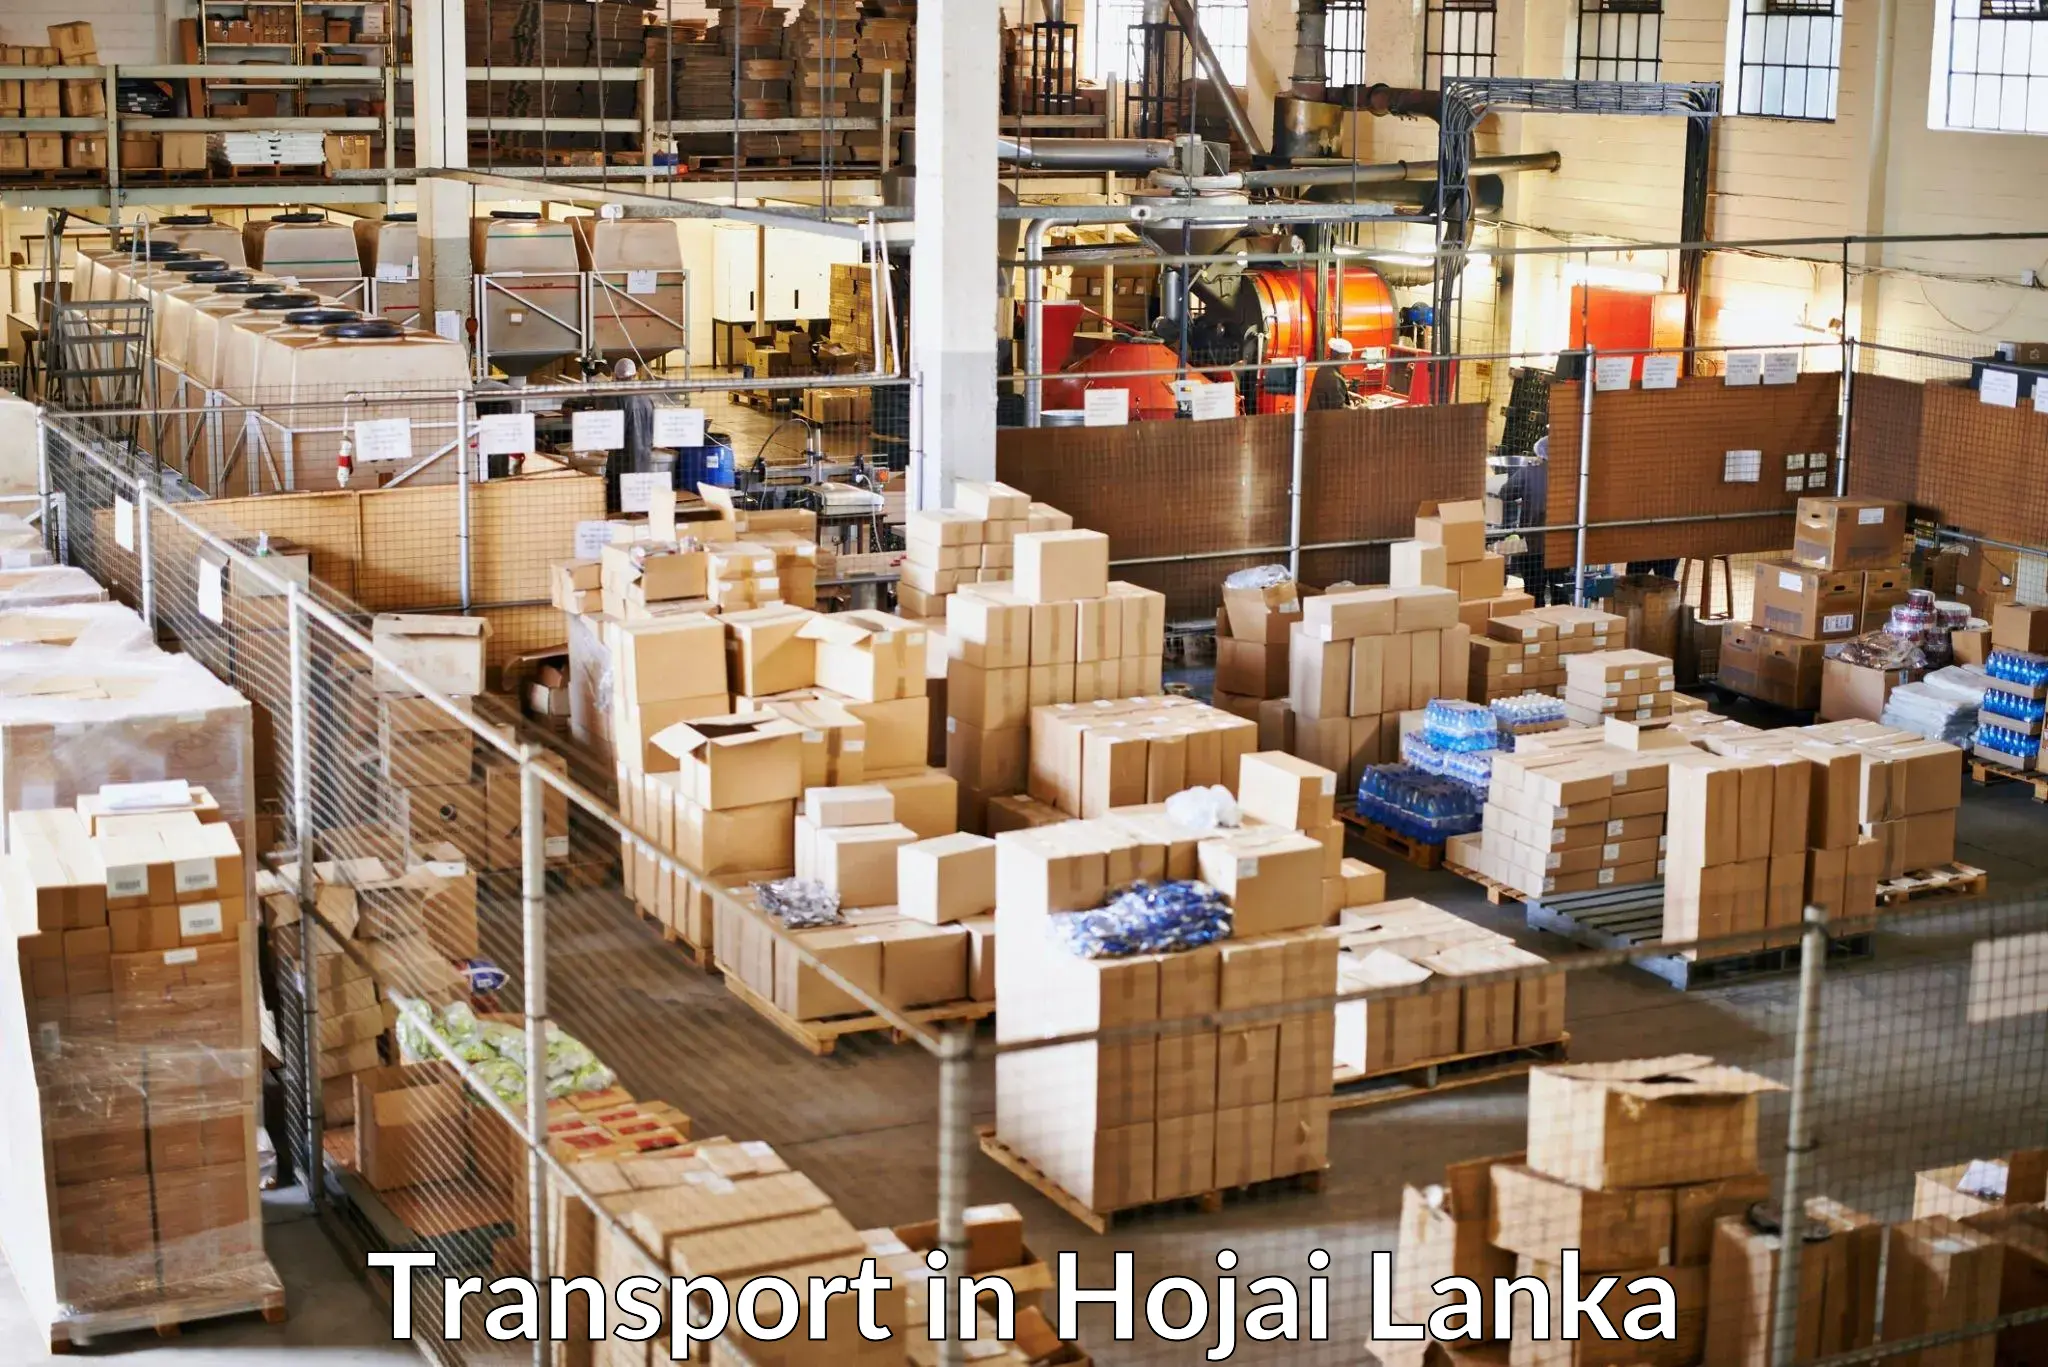 Cargo transportation services in Hojai Lanka